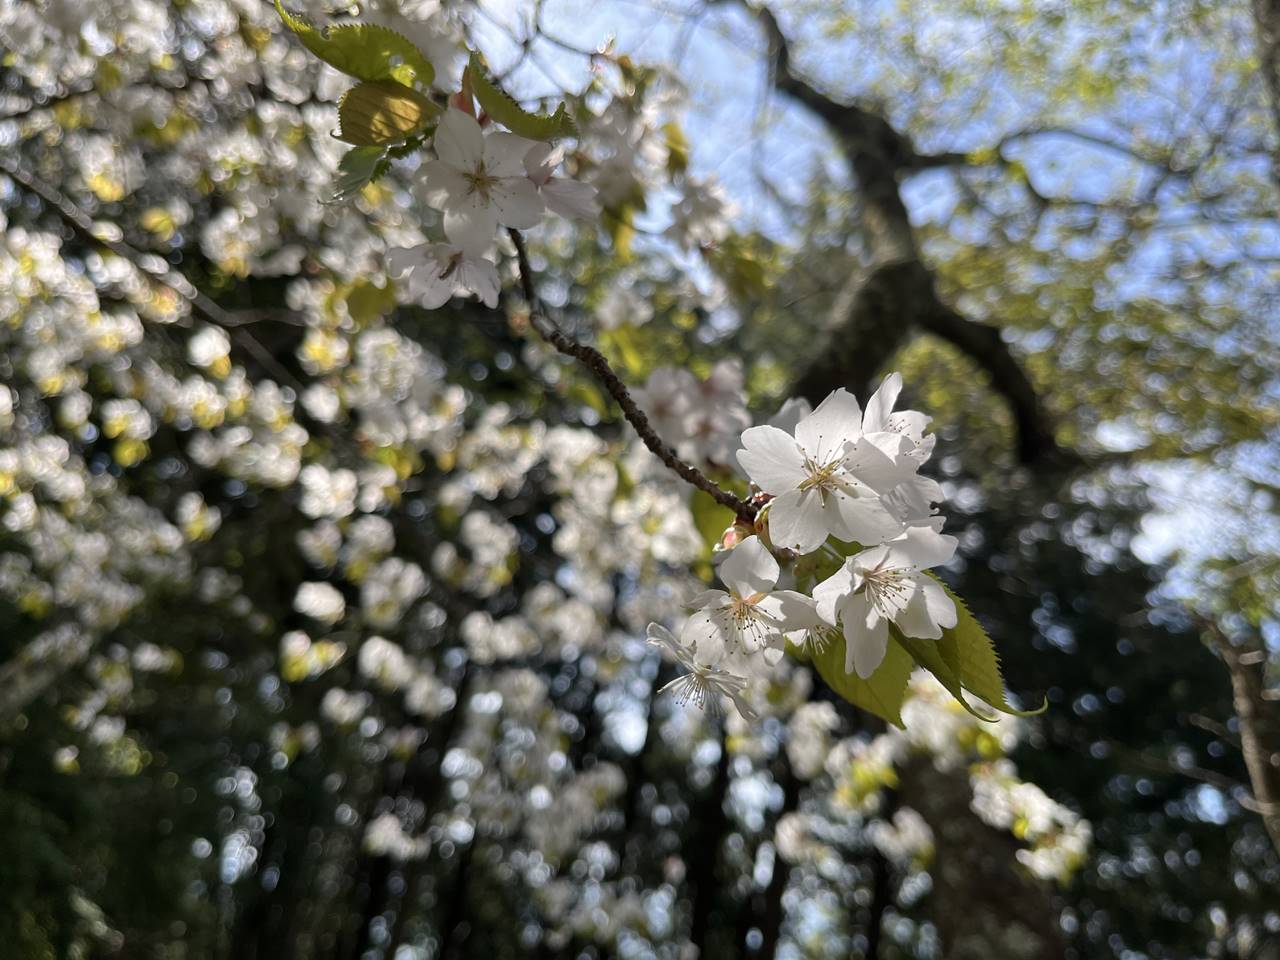 【高尾】生藤山 桜とツツジ咲く春の登山（電車・バス利用）